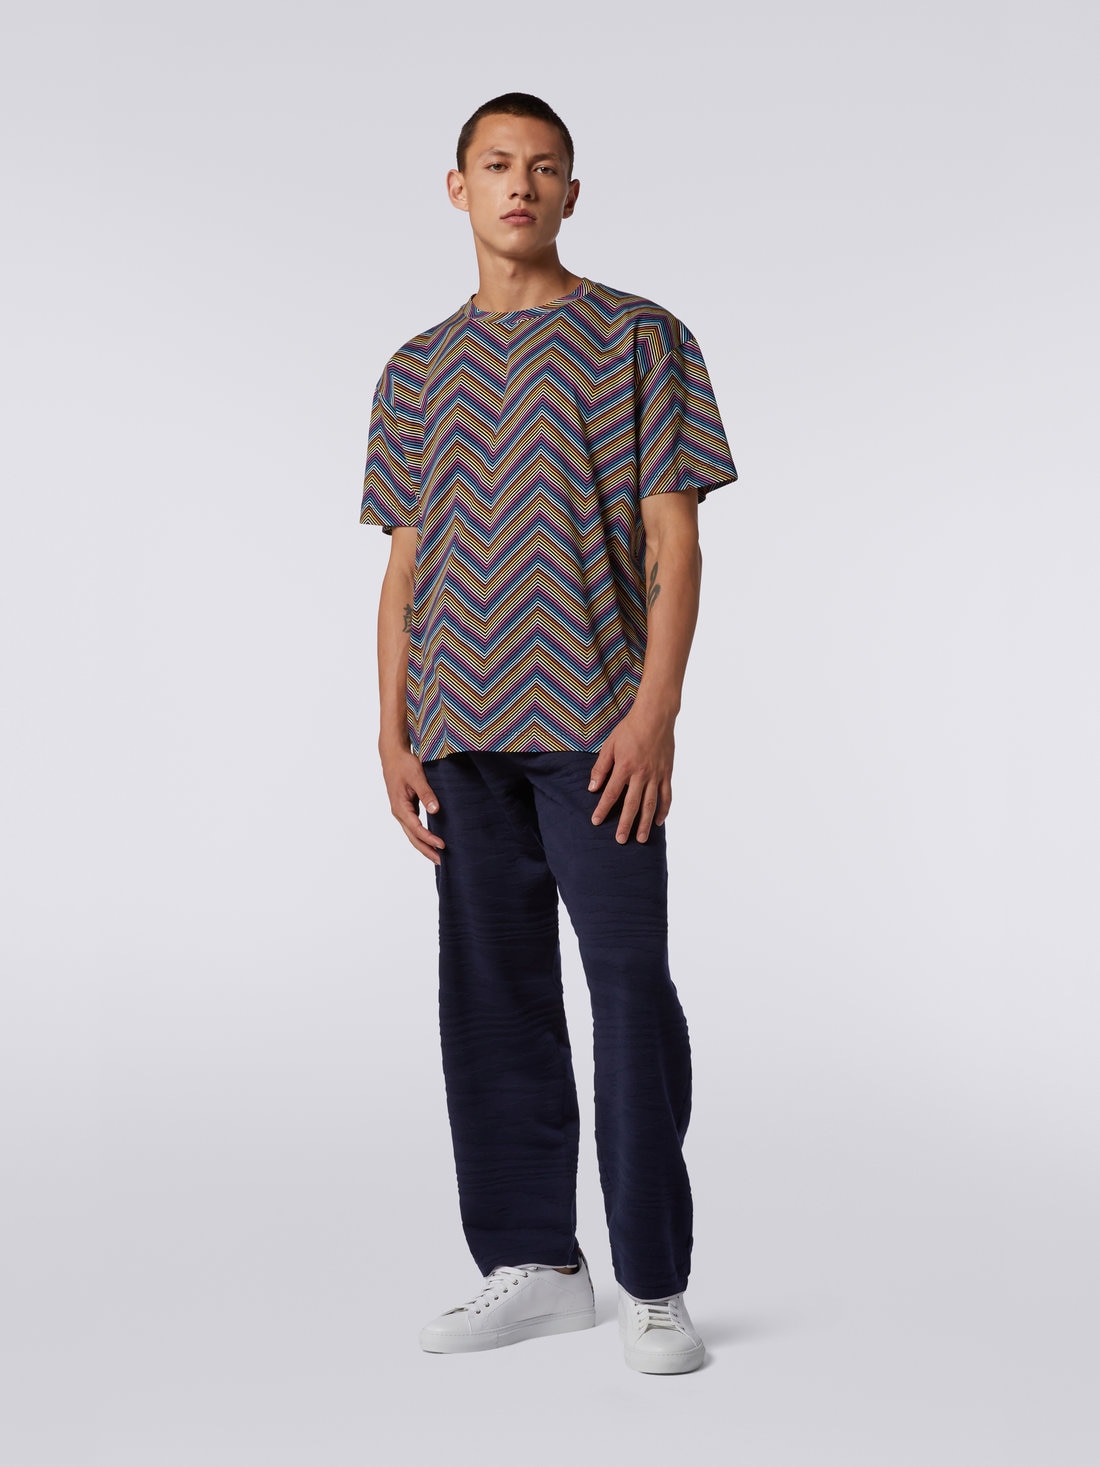 Camiseta de cuello redondo de algodón en zigzag integral, Multicolor  - US23SL19BJ00EZS91DJ - 1